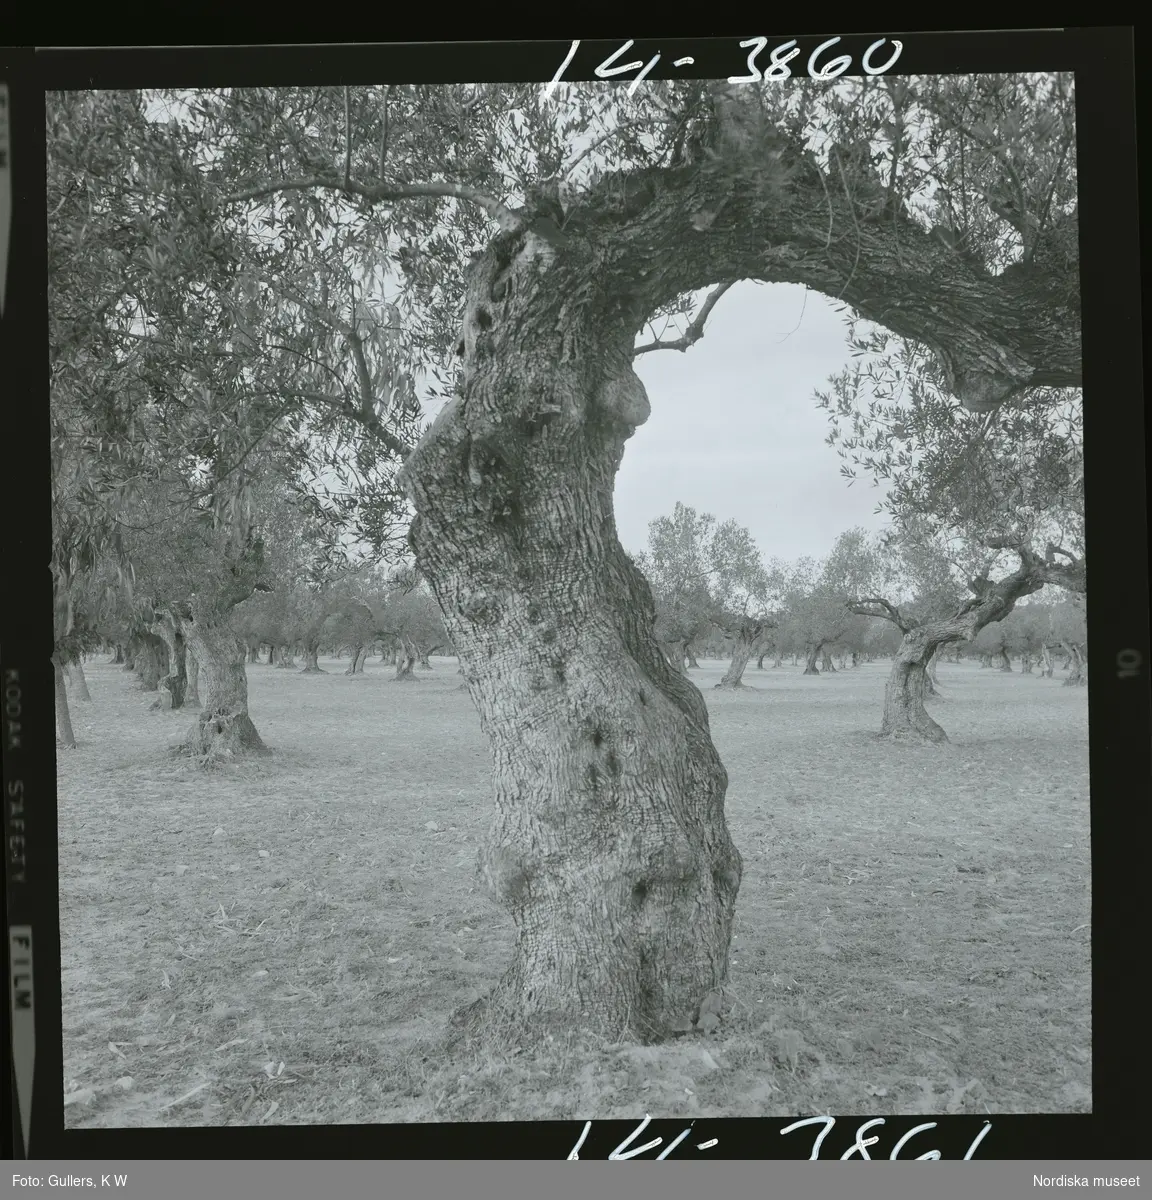 2791/1 Tunisien allmänt. Olivträd.